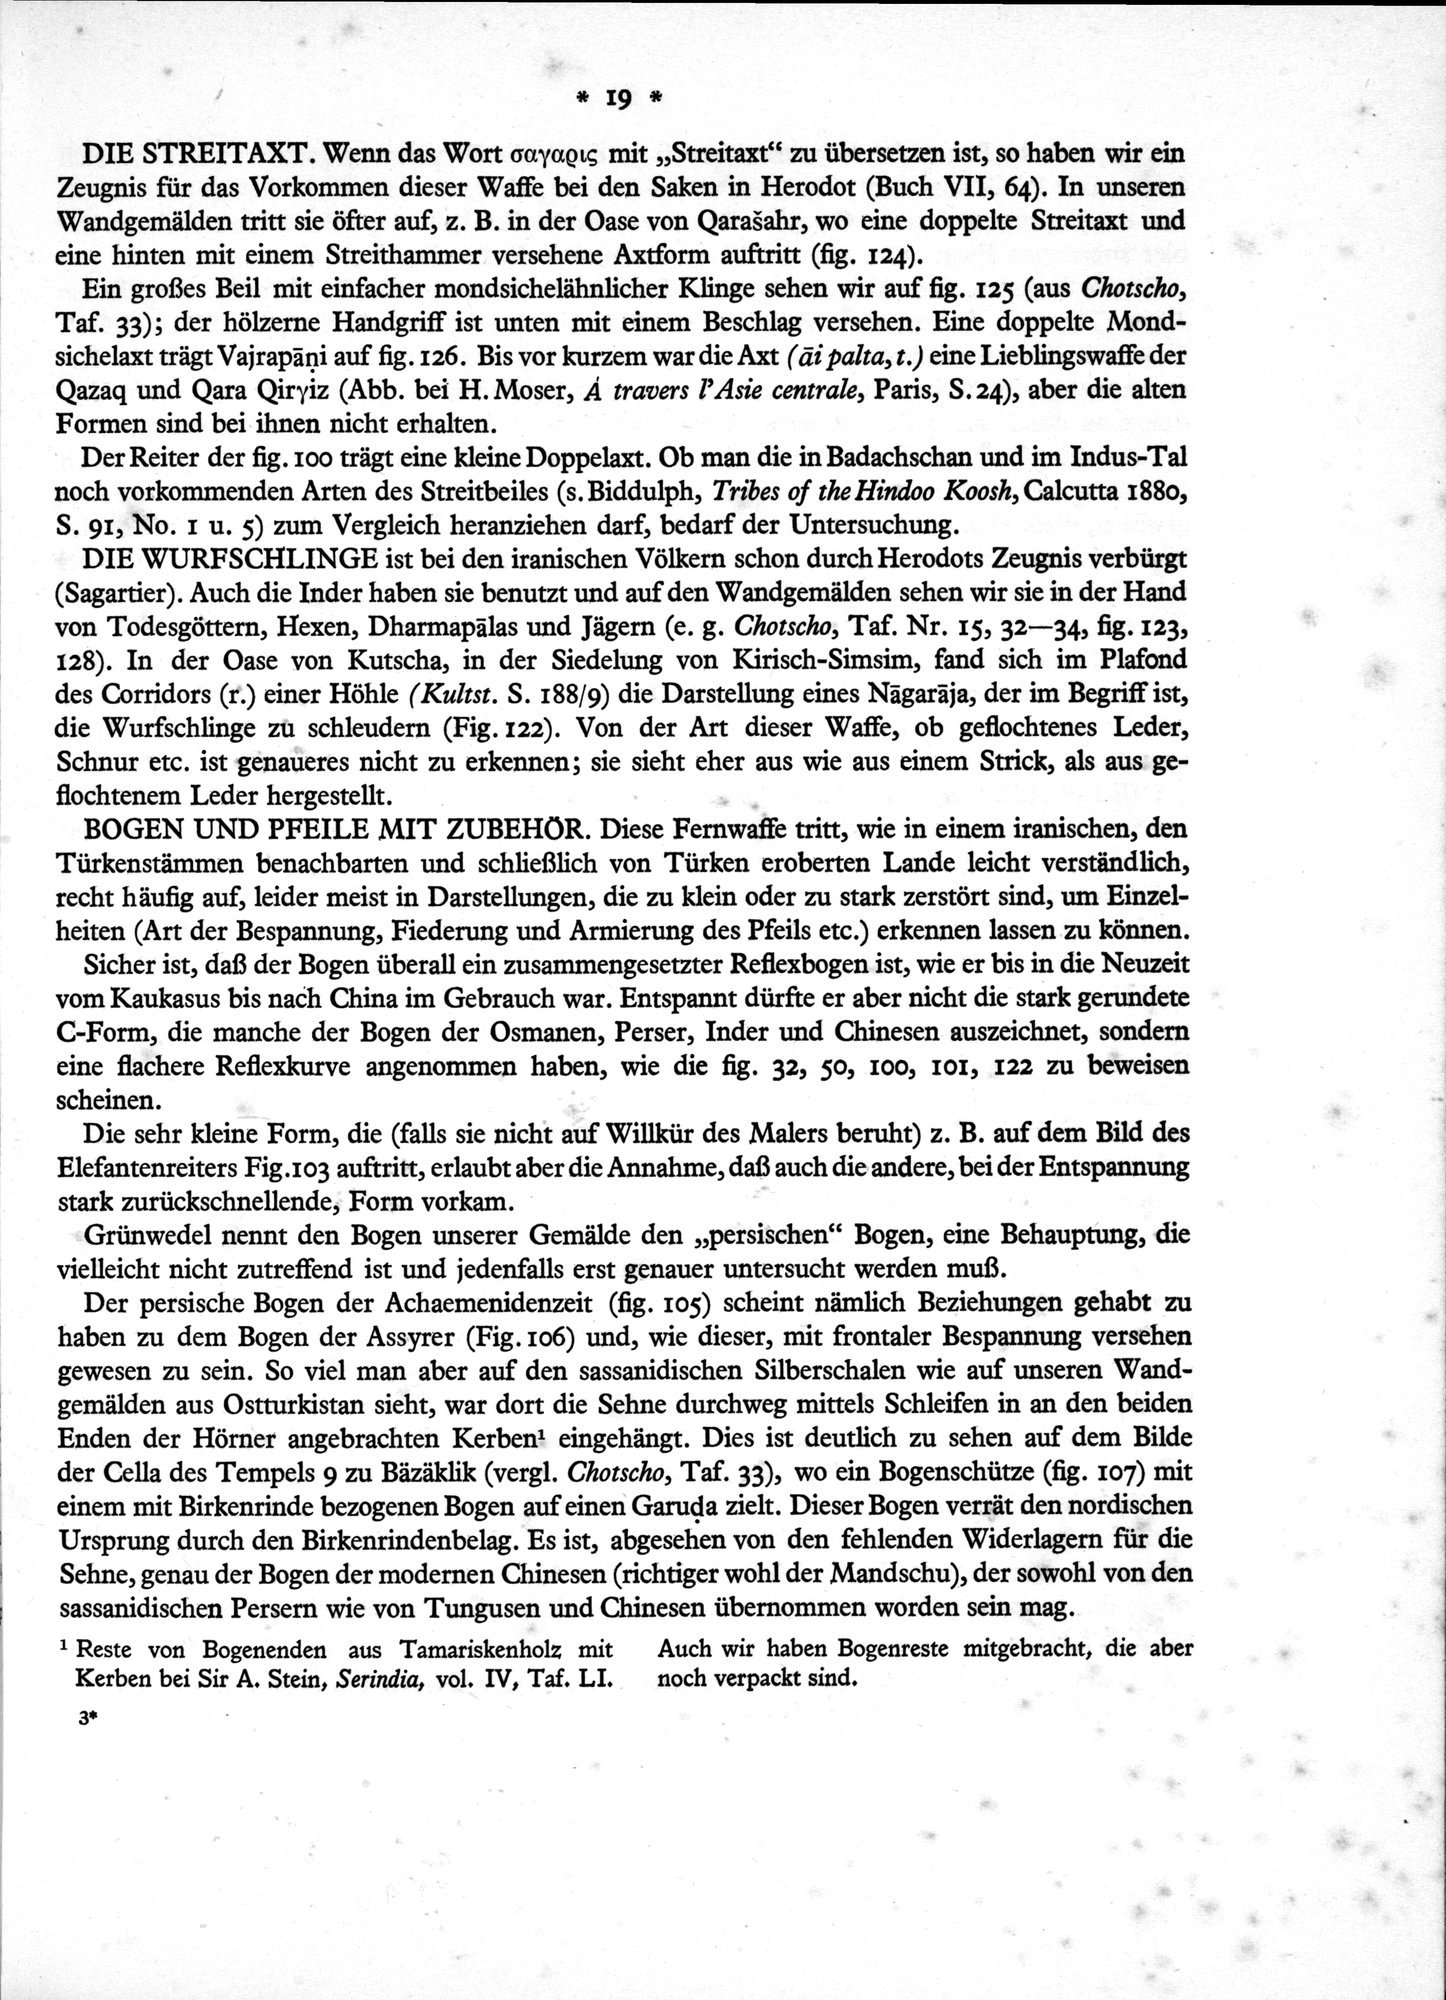 Bilderatlas zur Kunst und Kulturgeschichte Mittel-Asiens : vol.1 / Page 23 (Grayscale High Resolution Image)